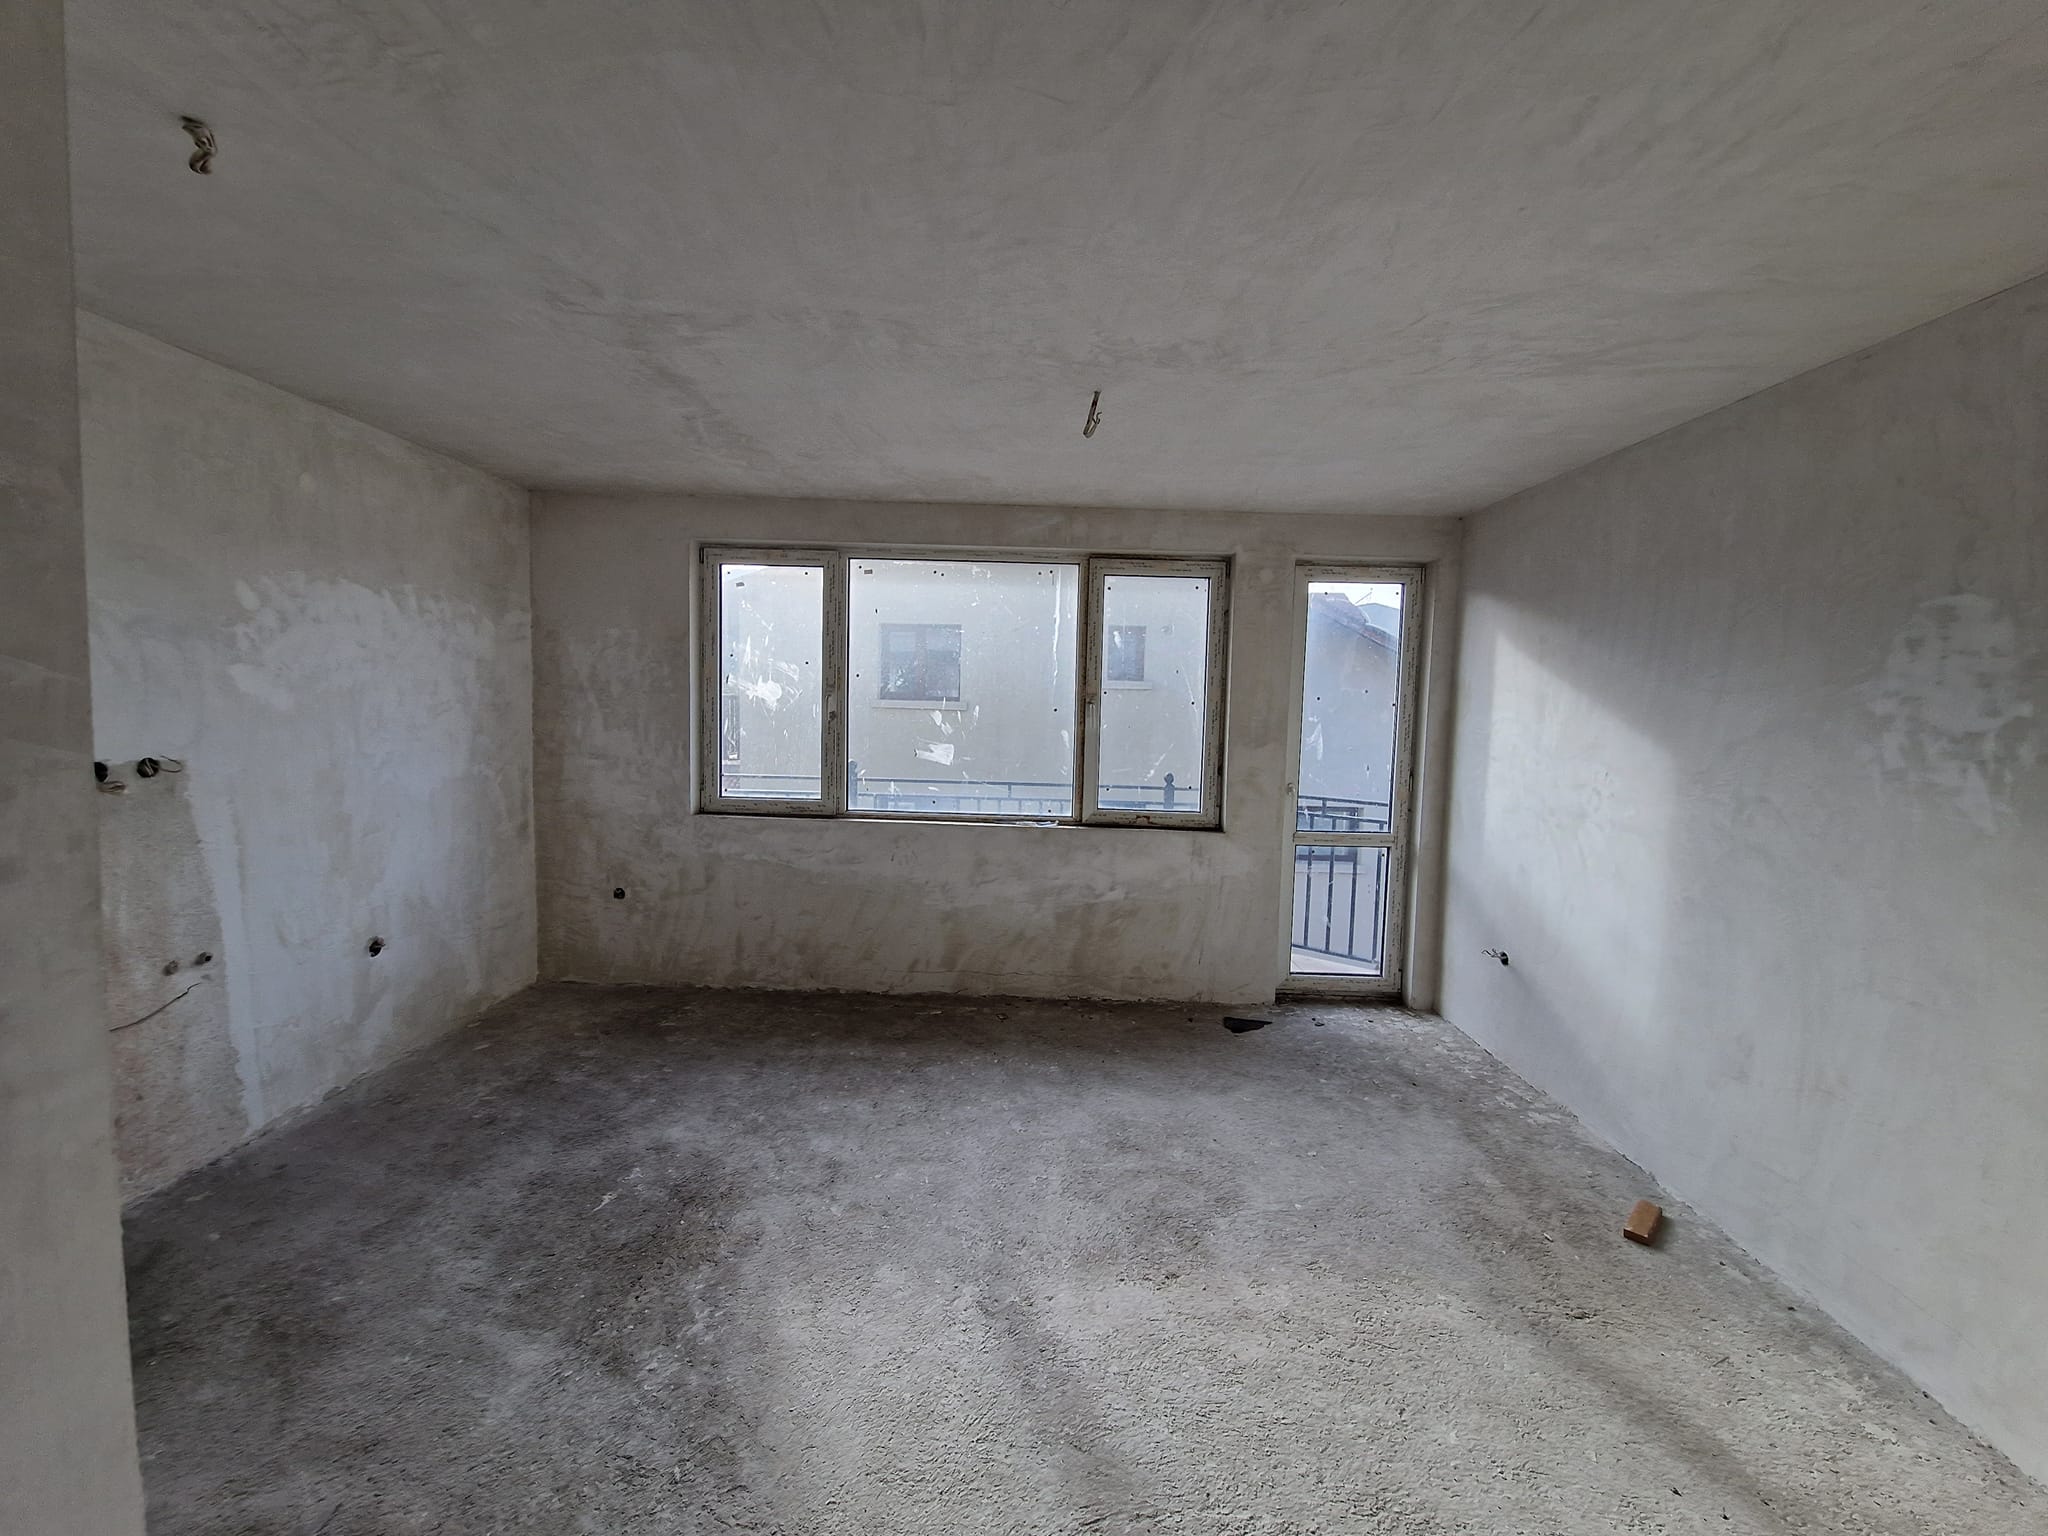 Разлог: Тристаен апартамент с пленителен изглед към Пирин планина